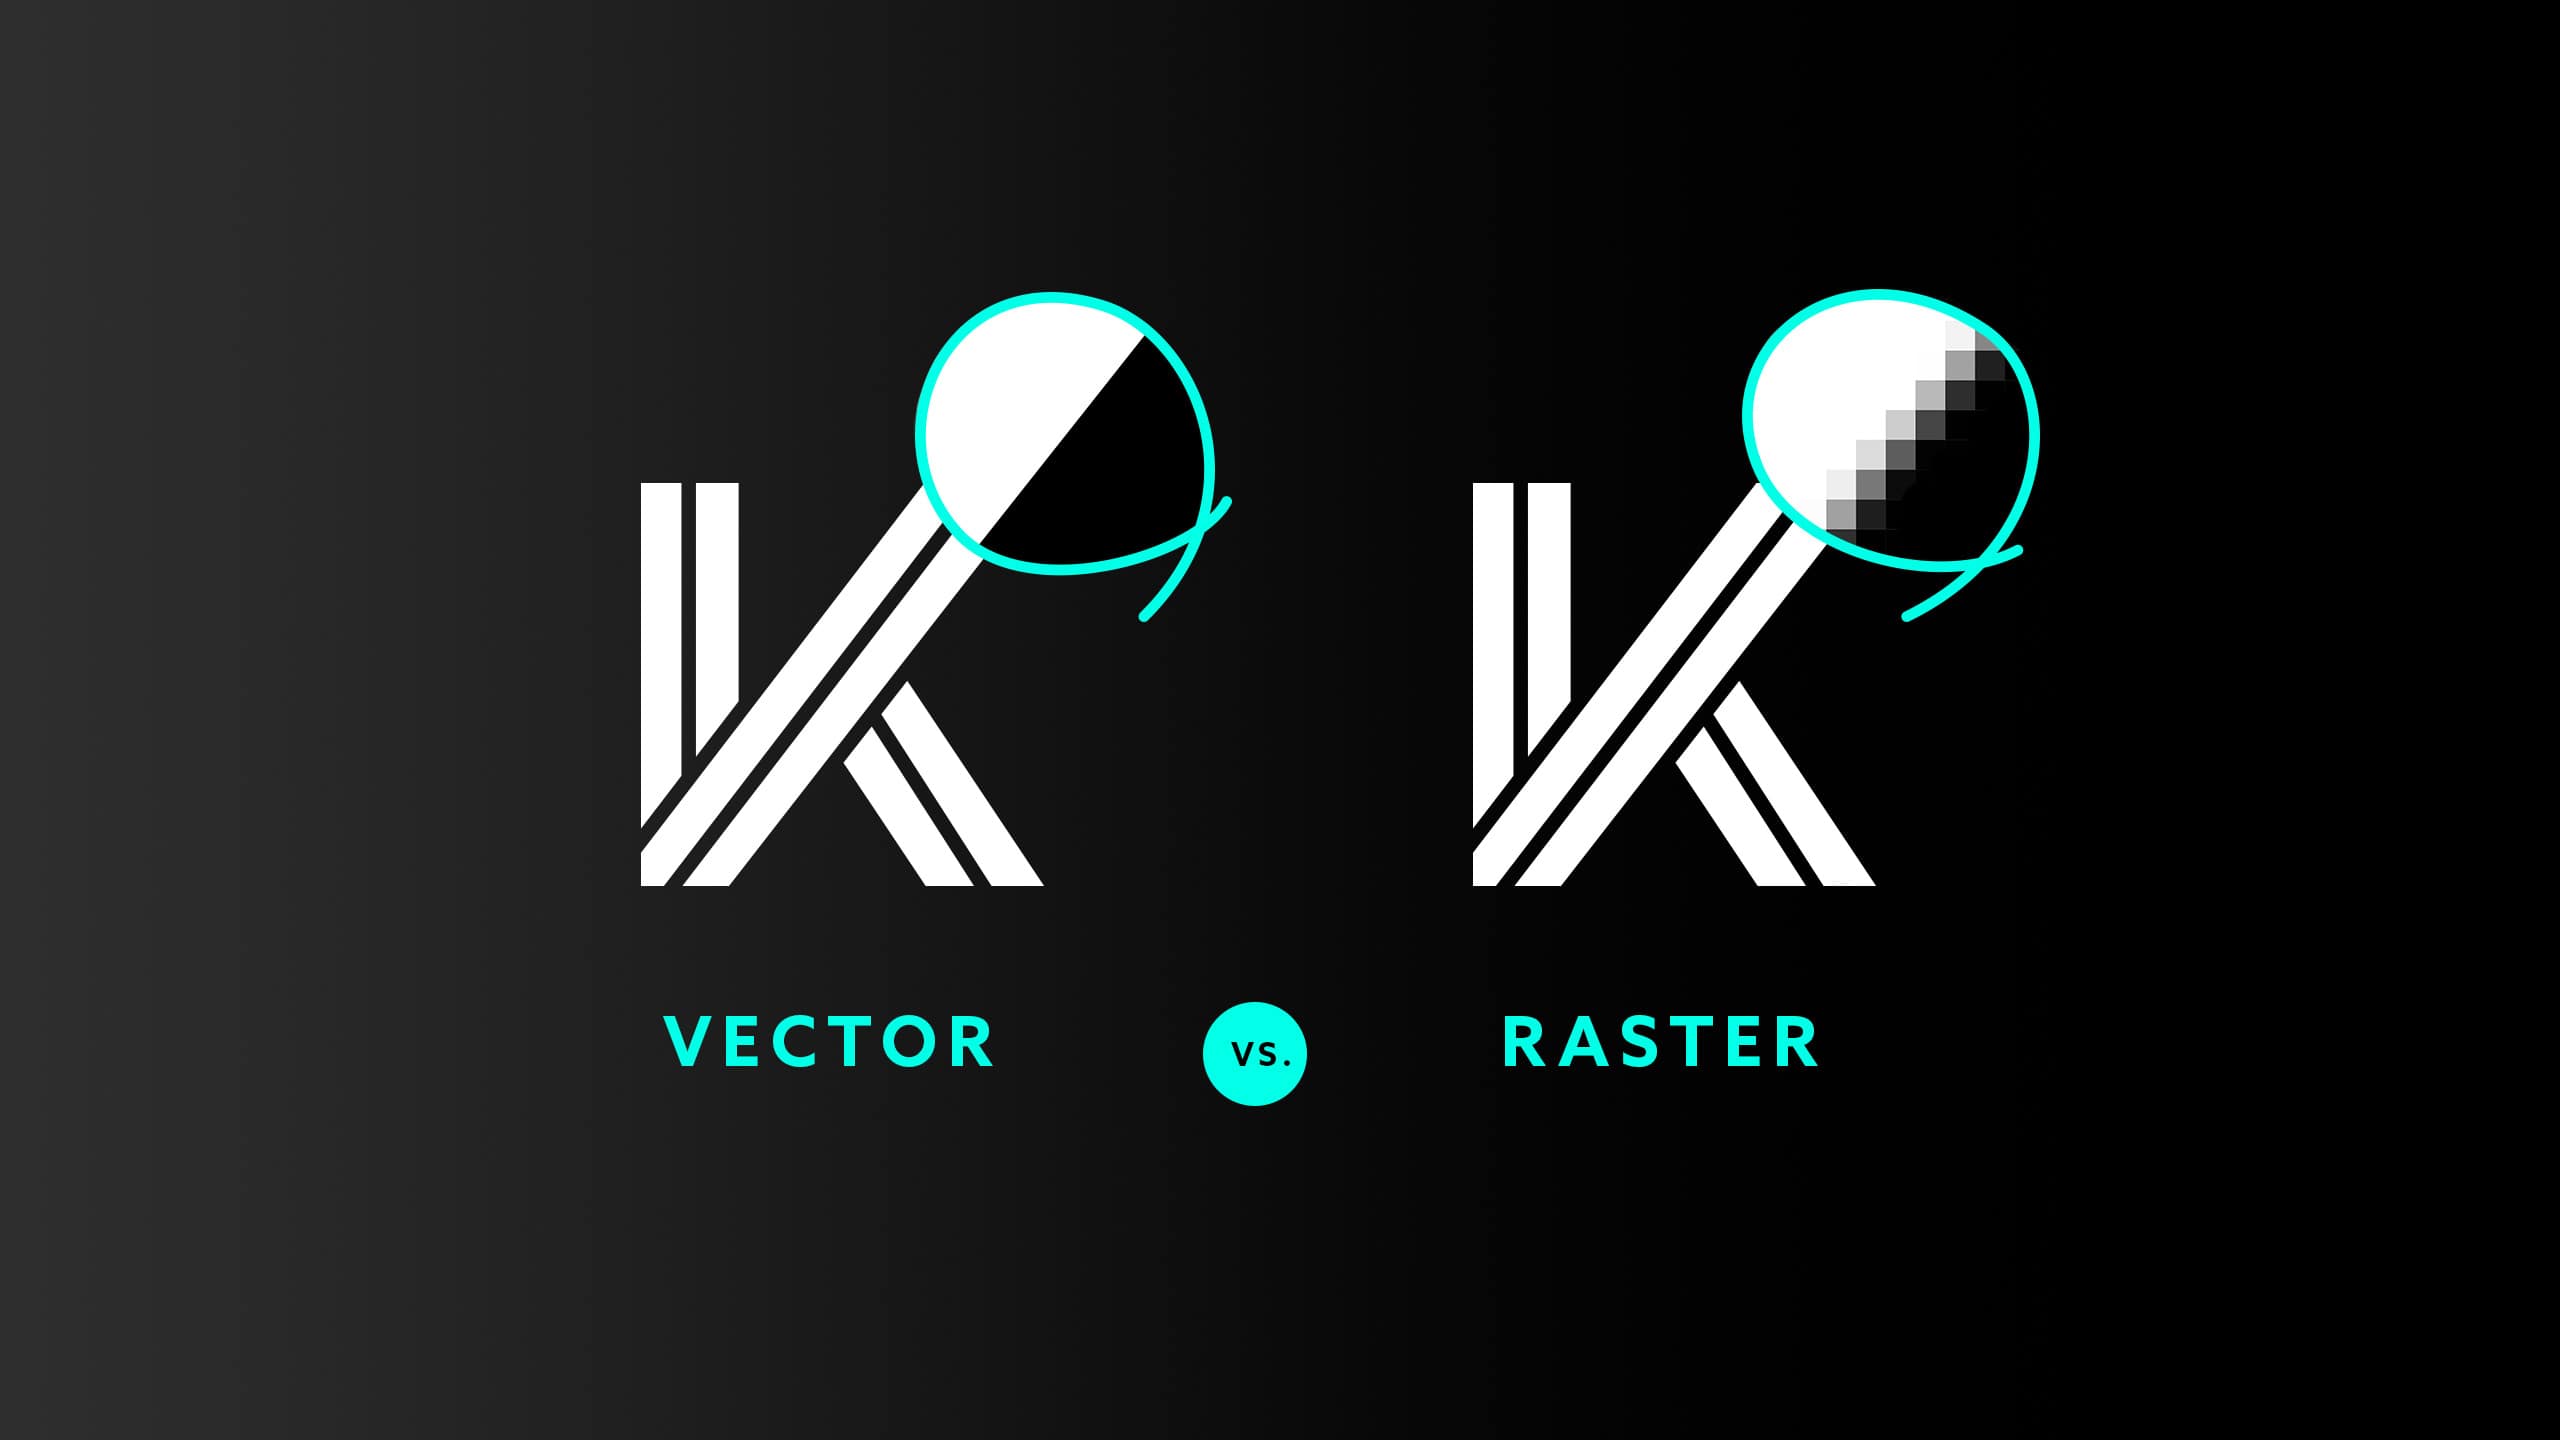 Raster vs. Vector